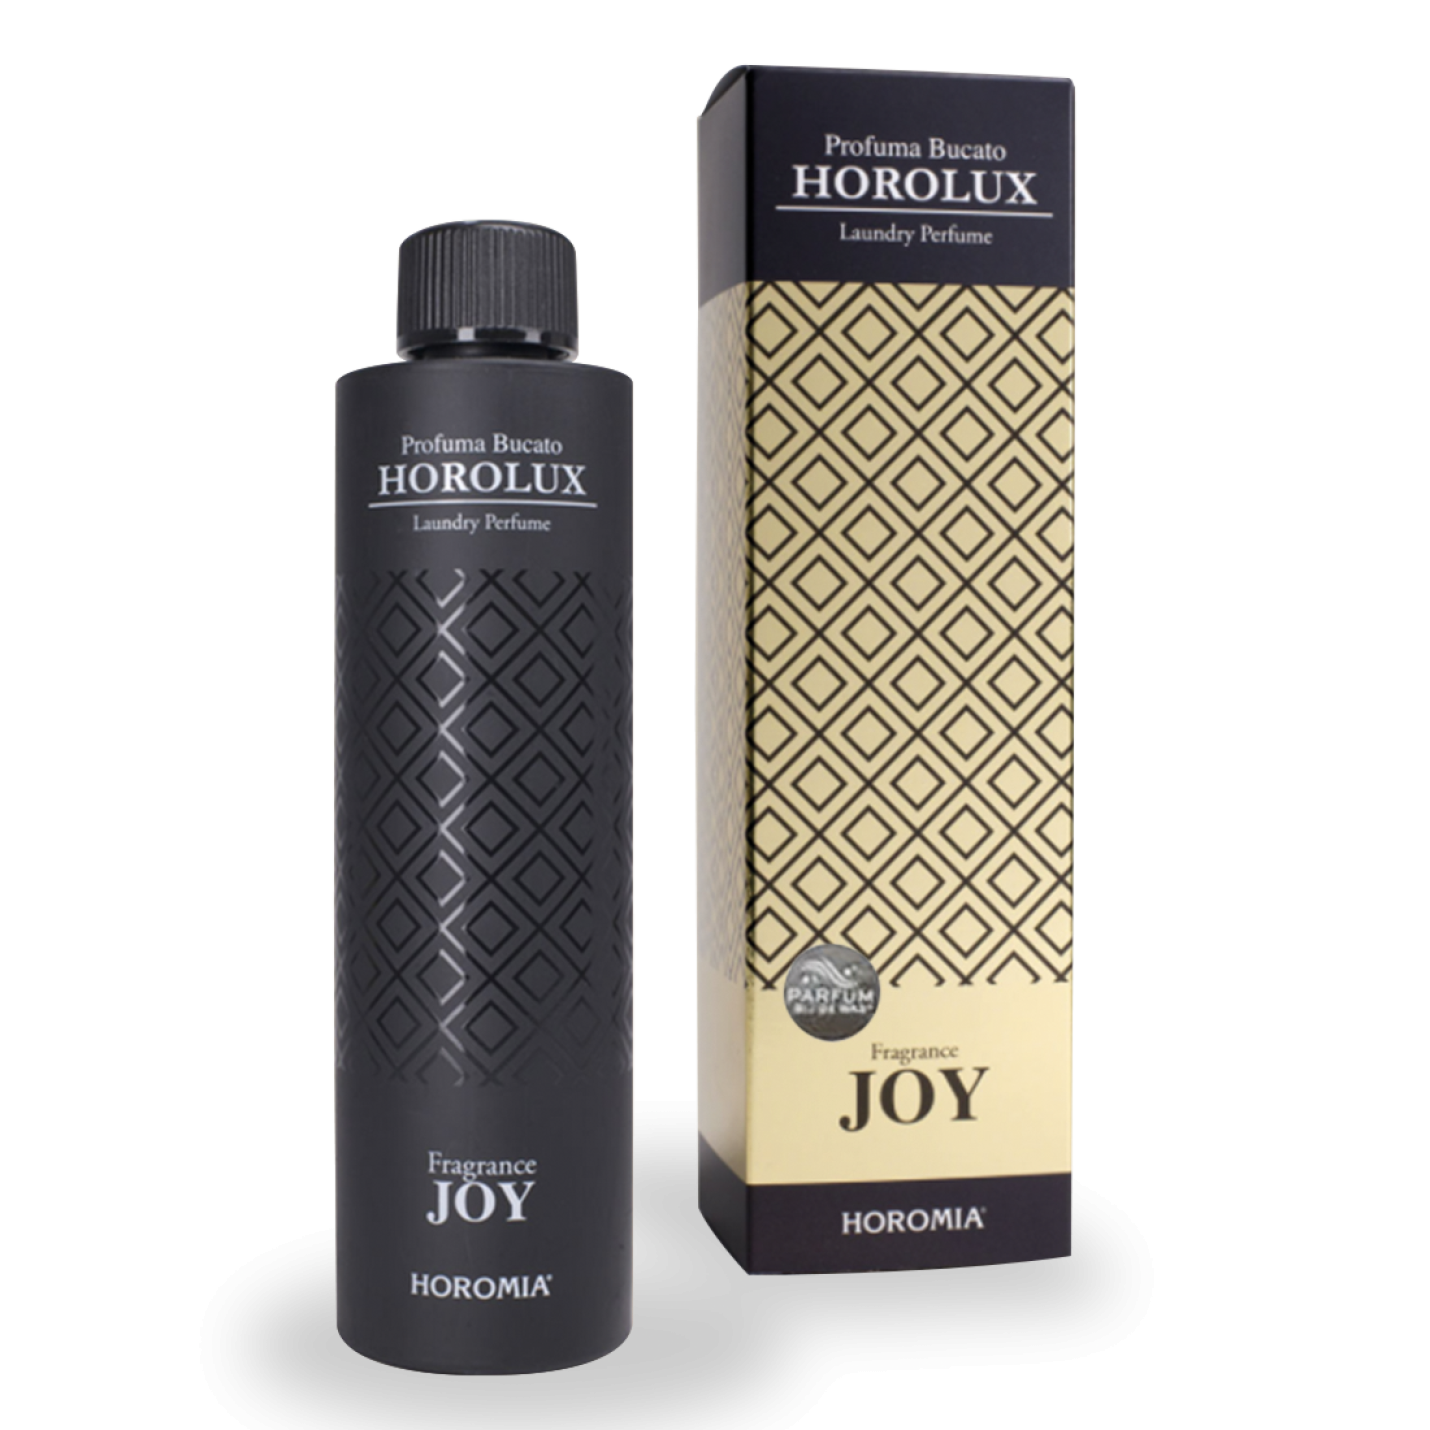 Horolux JOY 300ml - Horomia wasparfum